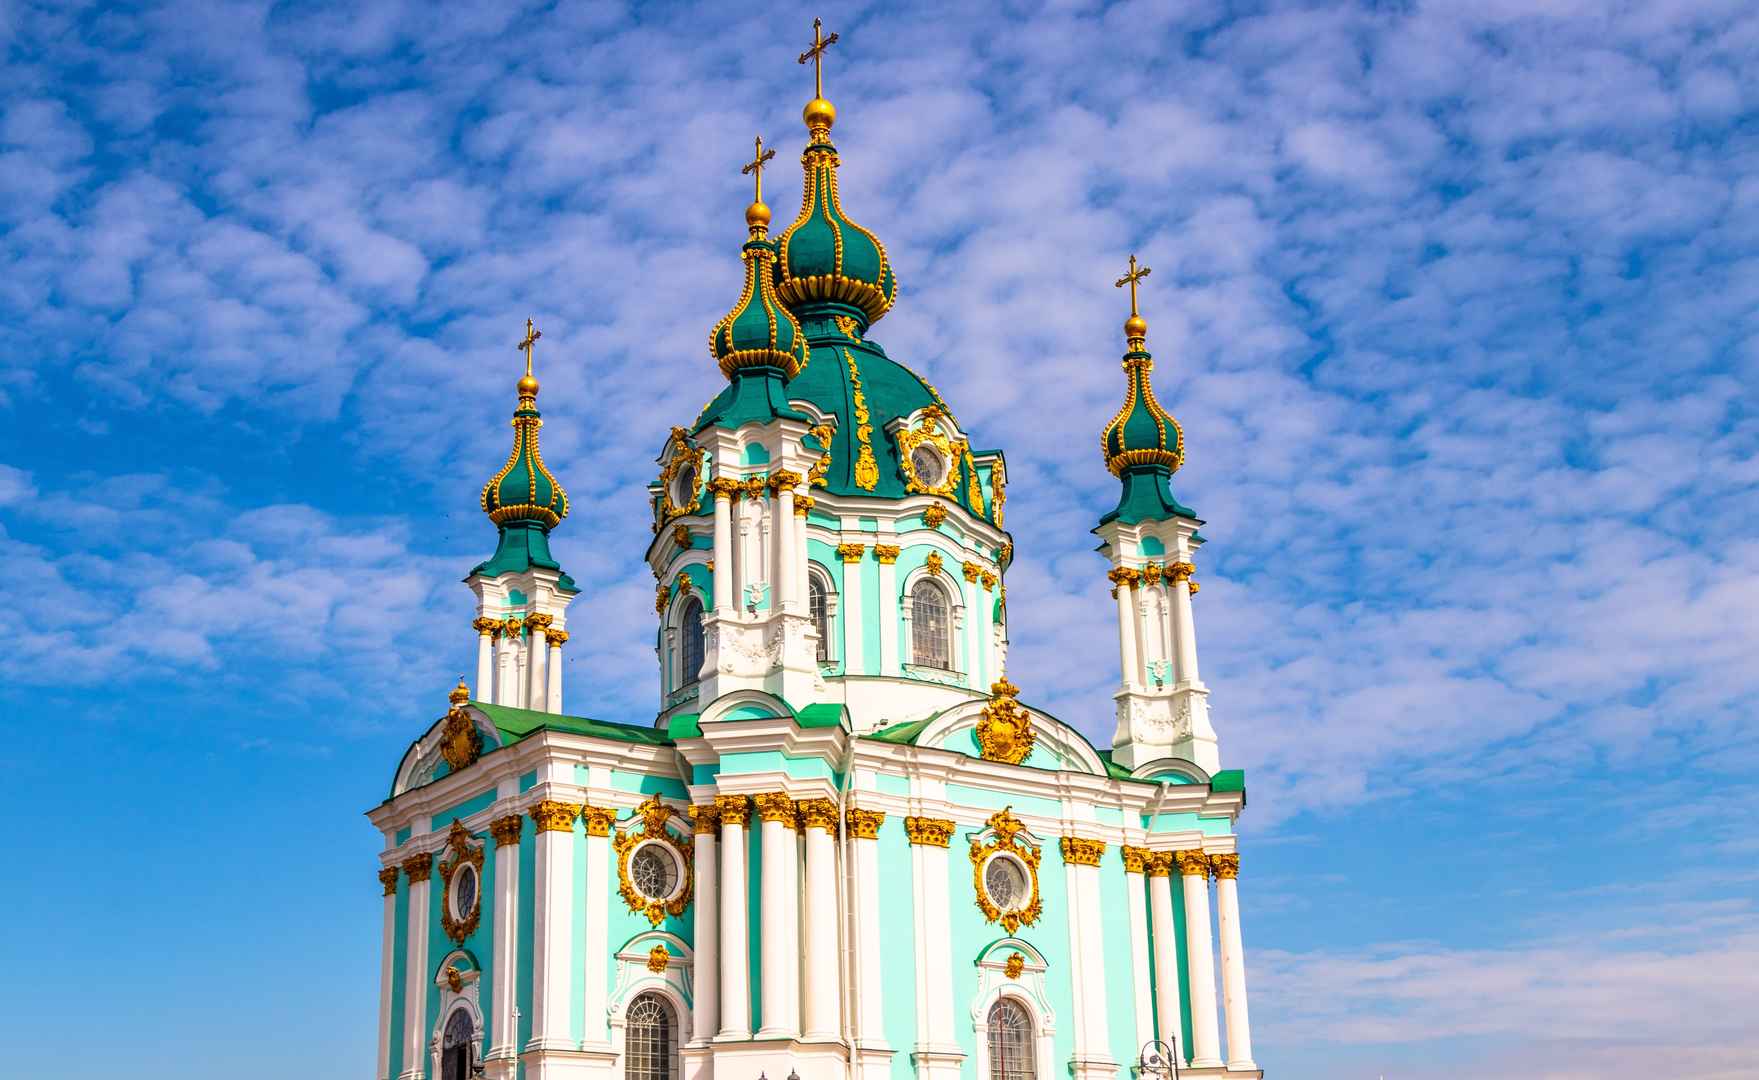 乌克兰基辅建筑风景图片